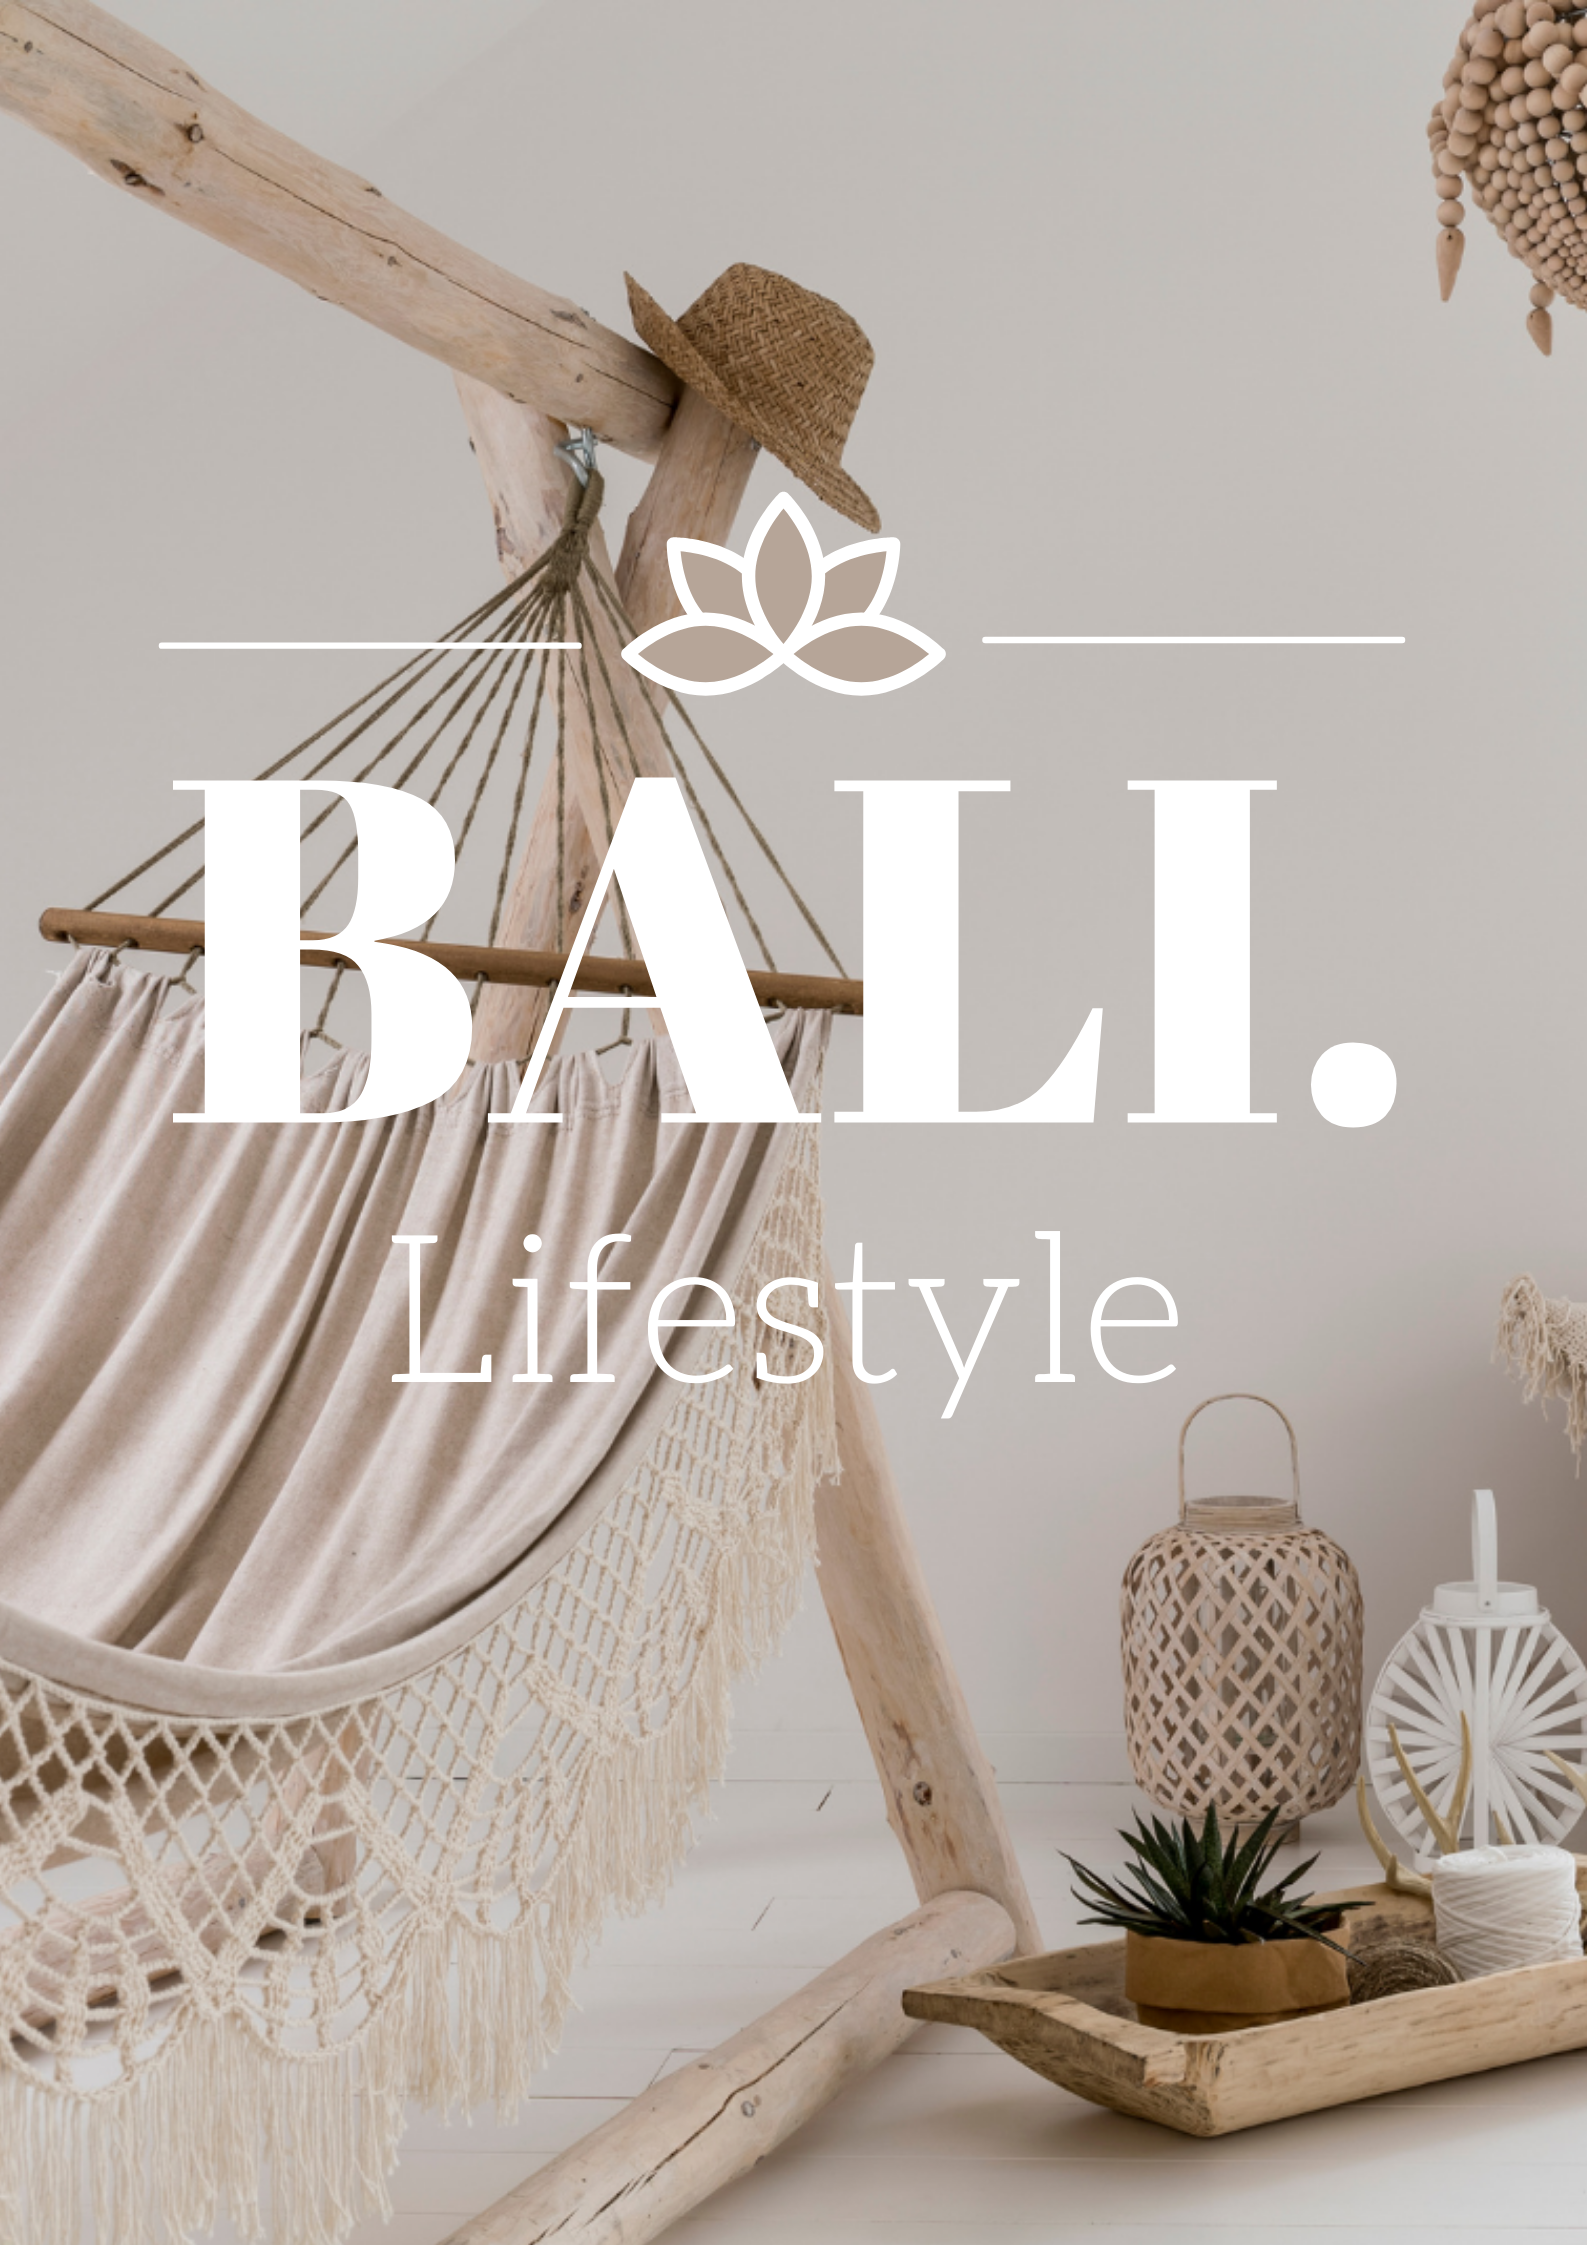 Kilauea Mountain Verdwijnen schommel Bali Lifestyle Store - Grootste bohemian webshop voor jouw interieur!